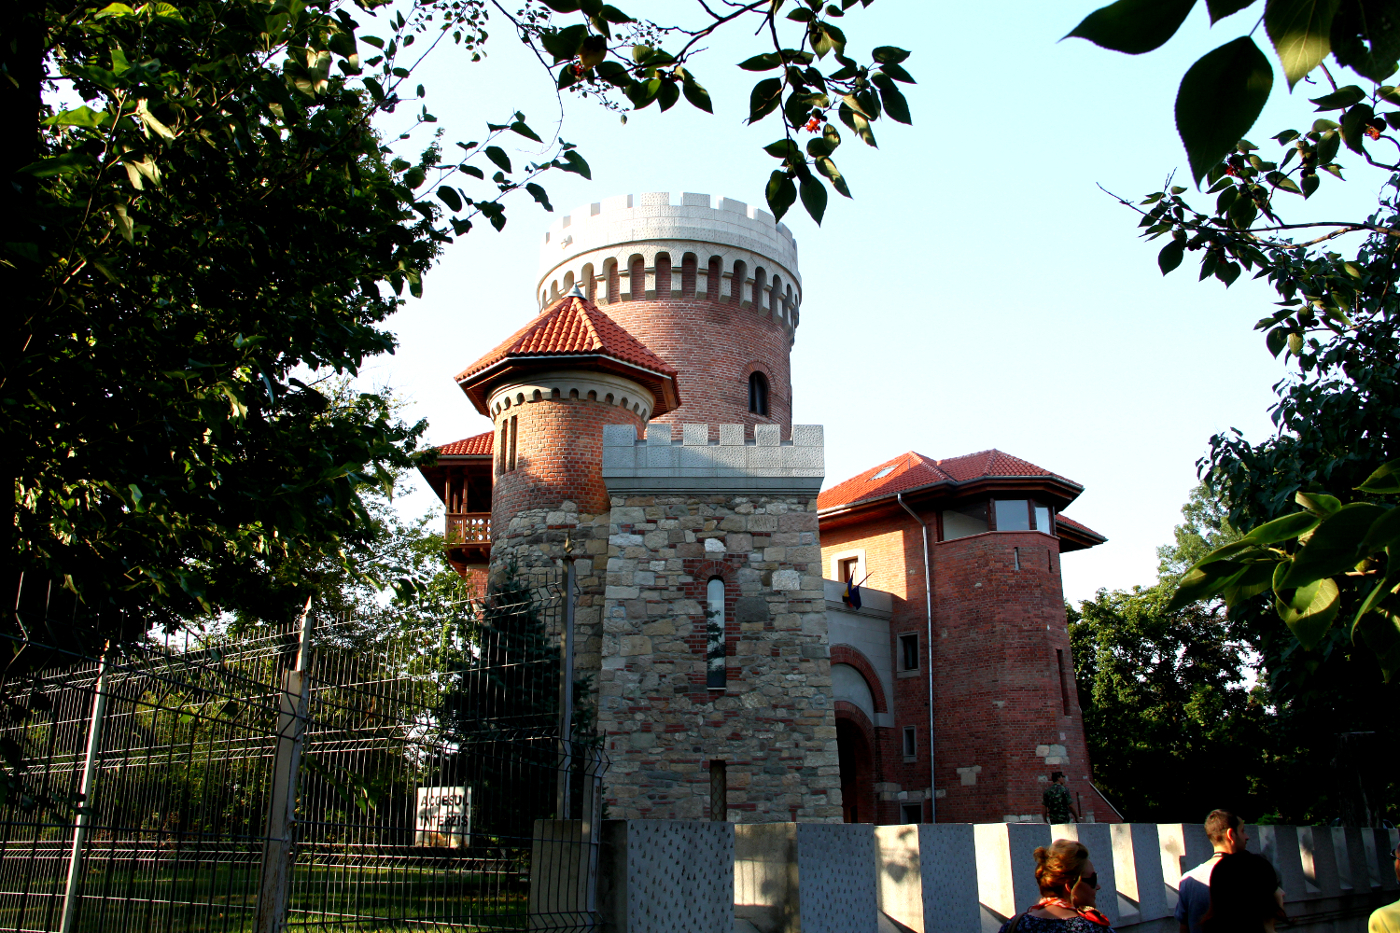 Vlad Tepes (Vlad the Impaler) Castle in Bucharest